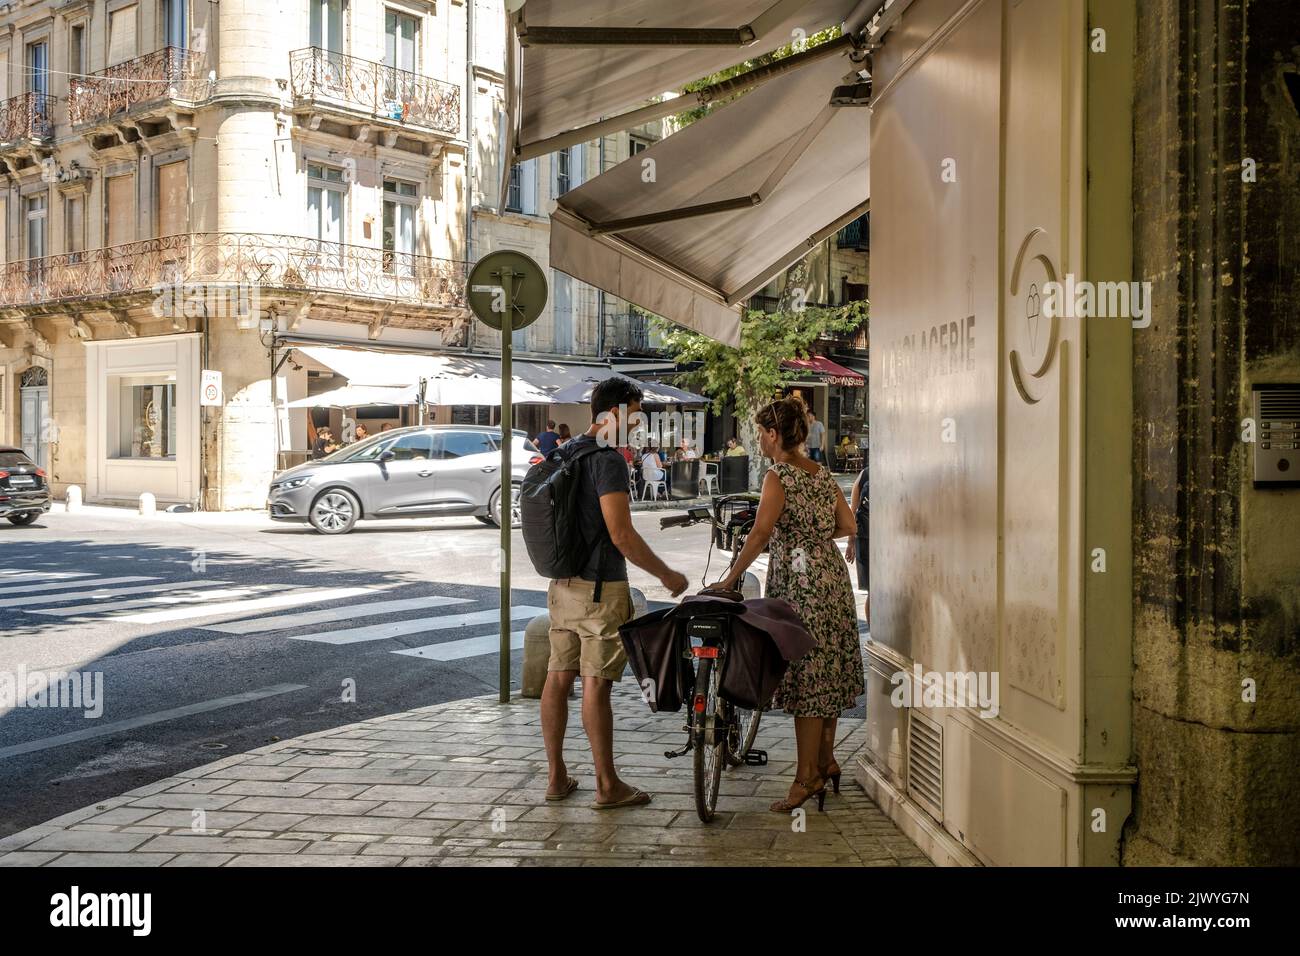 Personnes marchant dans les rues du centre d'Uzès, France Banque D'Images